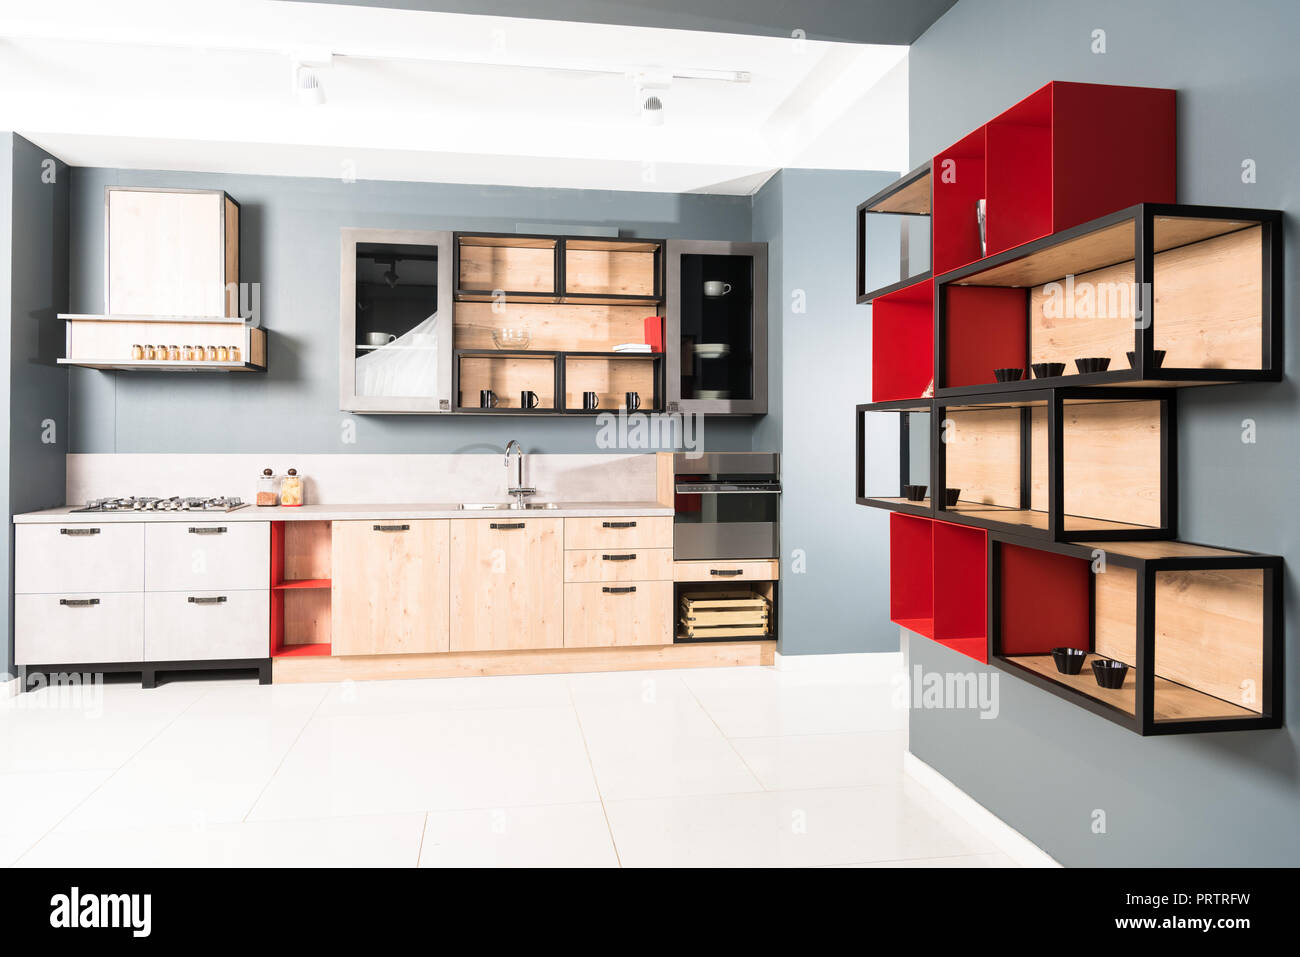 Innenraum der moderne saubere helle Küche mit Möbel und Holz- rote Regale Stockfoto